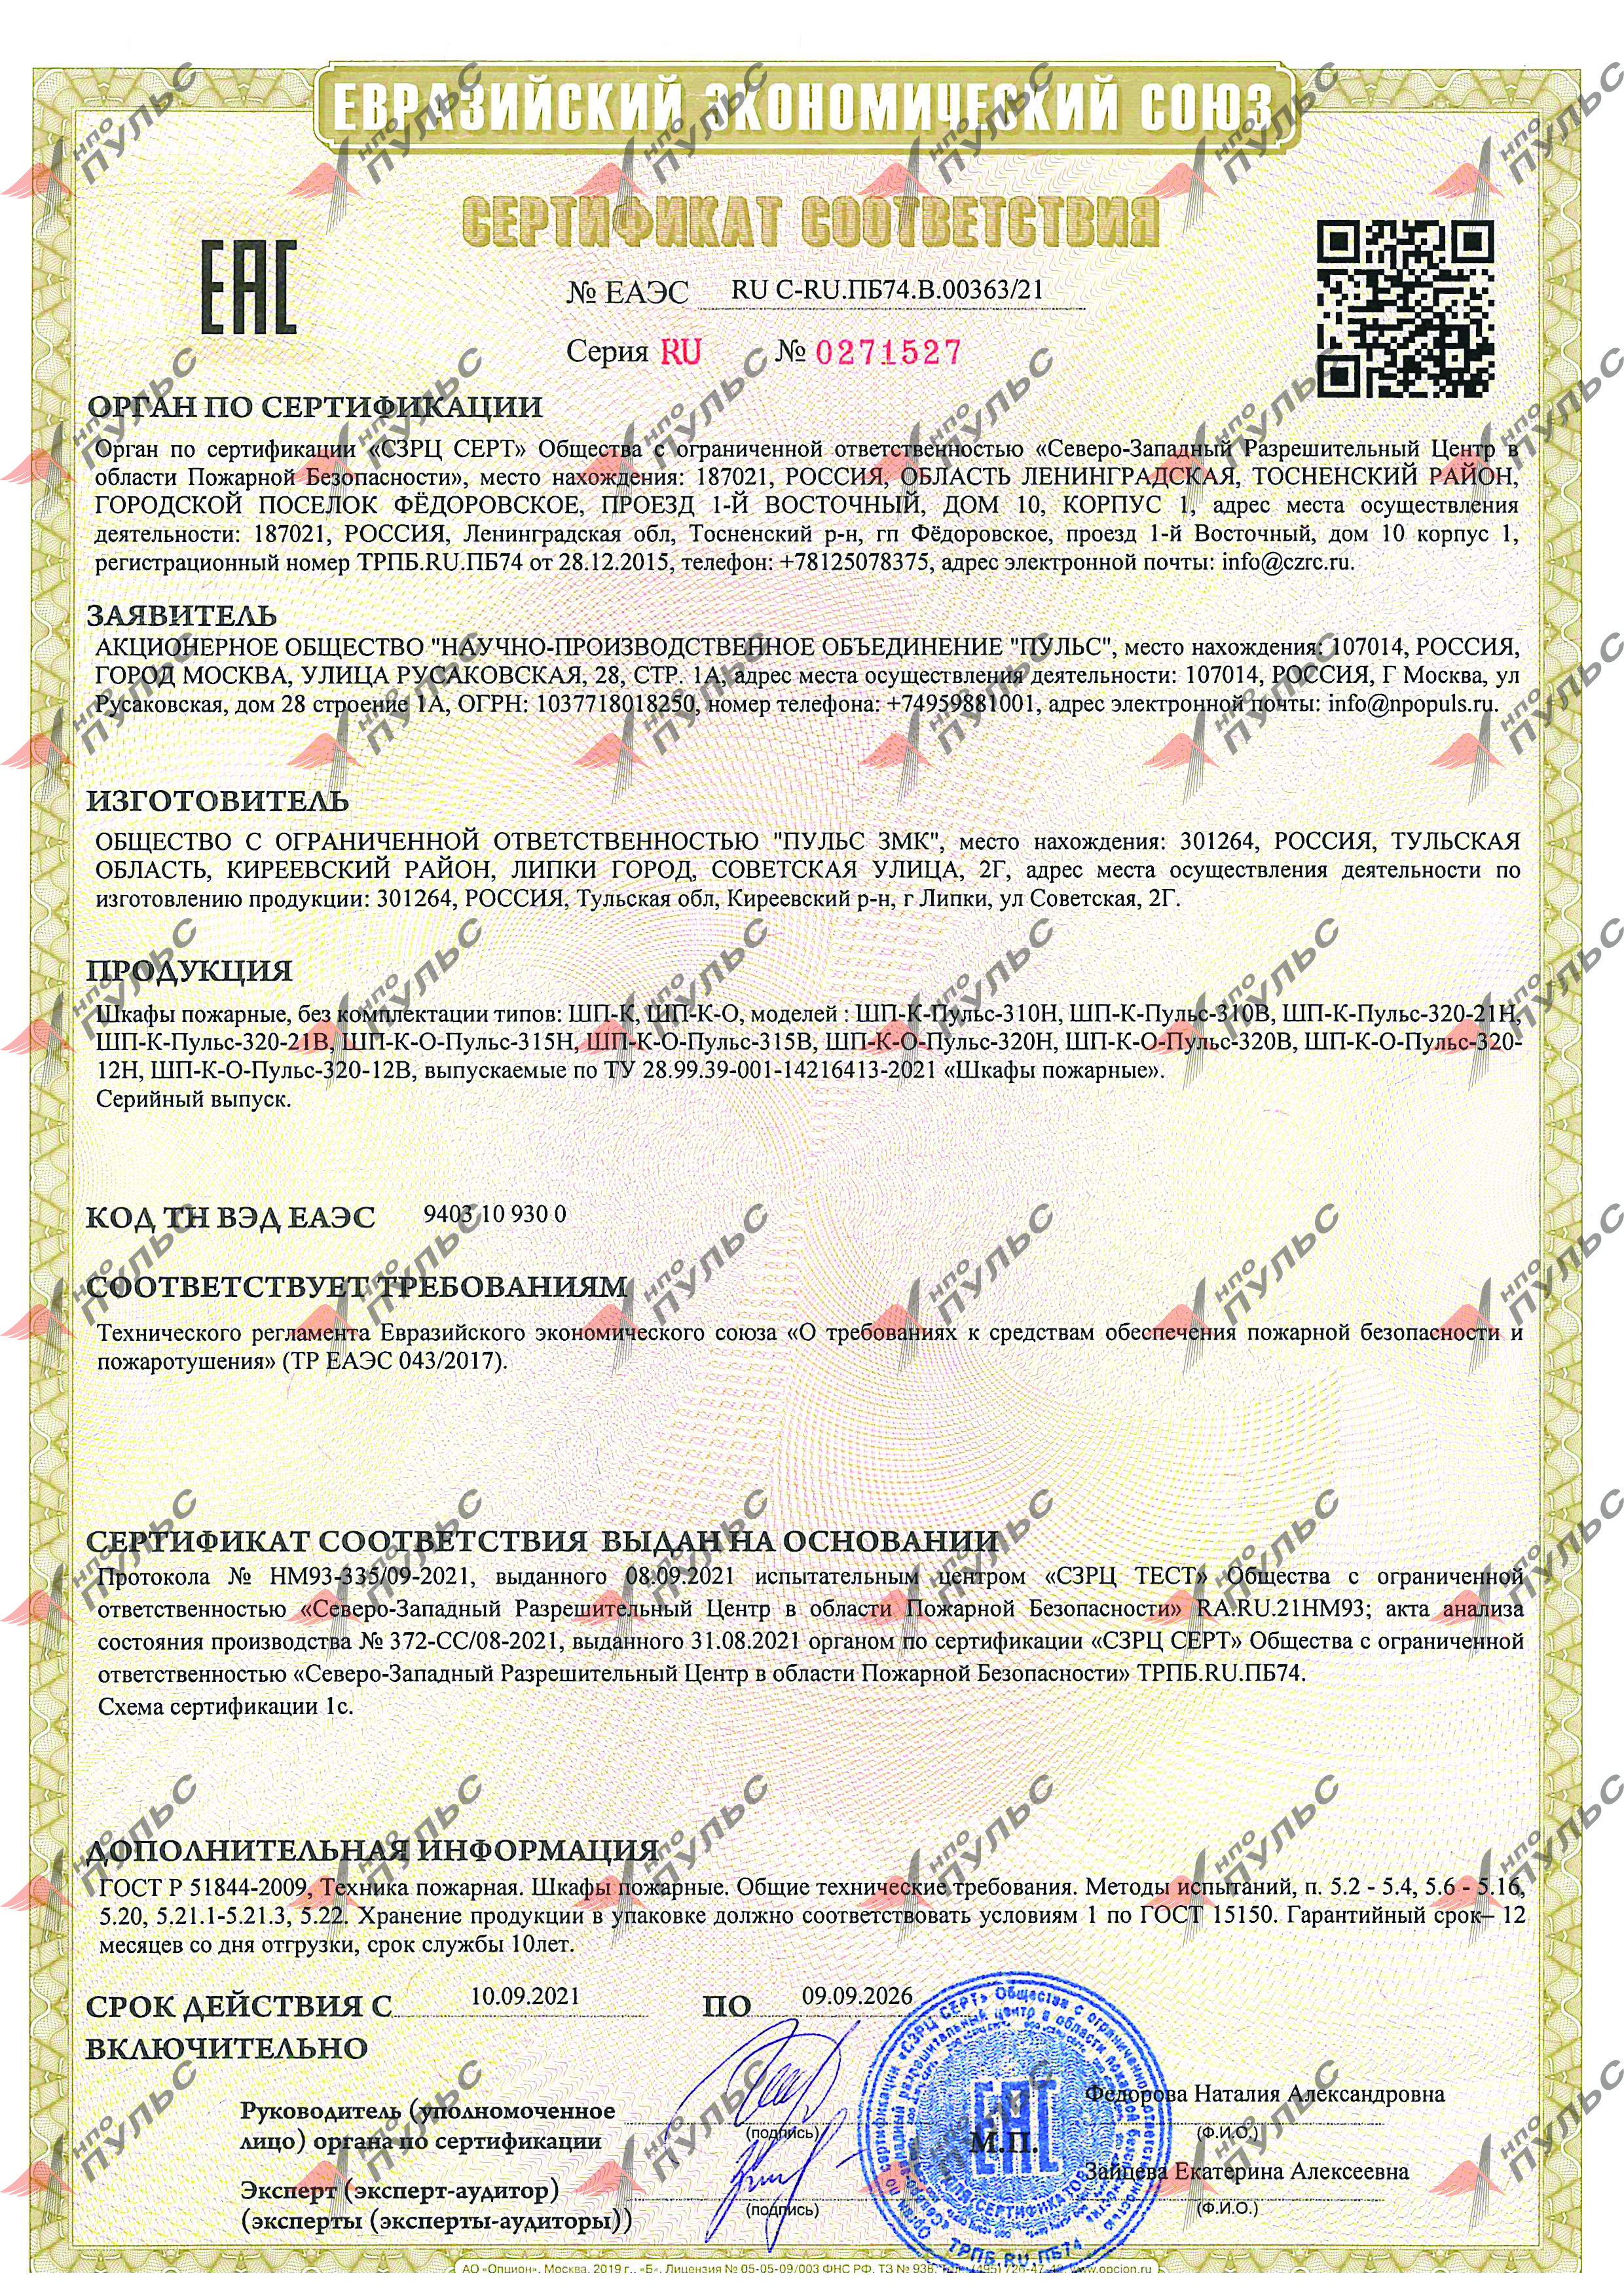 Шкаф пожарный ШПК-320 сертификат соответствия